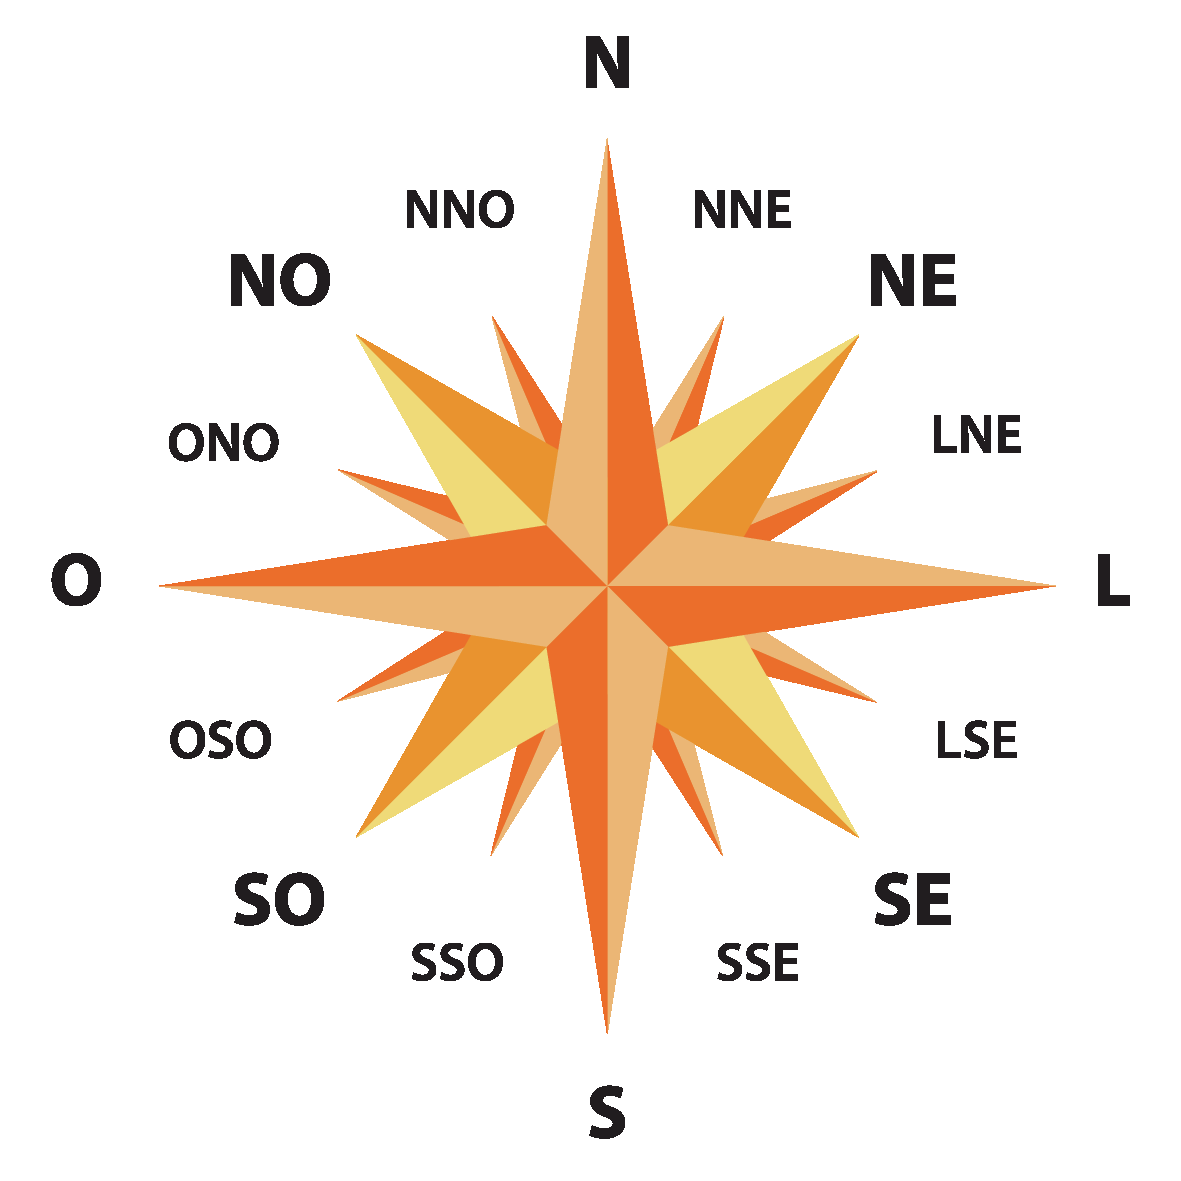 Ilustração. Rosa dos ventos, estrela de várias pontas que apontam em sentido horário para os pontos cardeais: N, S, L e O. Os pontos colaterais são: N E, S E, S O e N O. Os pontos subcolaterais: N N E, L N E, L S E, S S E, S S O, O S O, O N O e N N O.